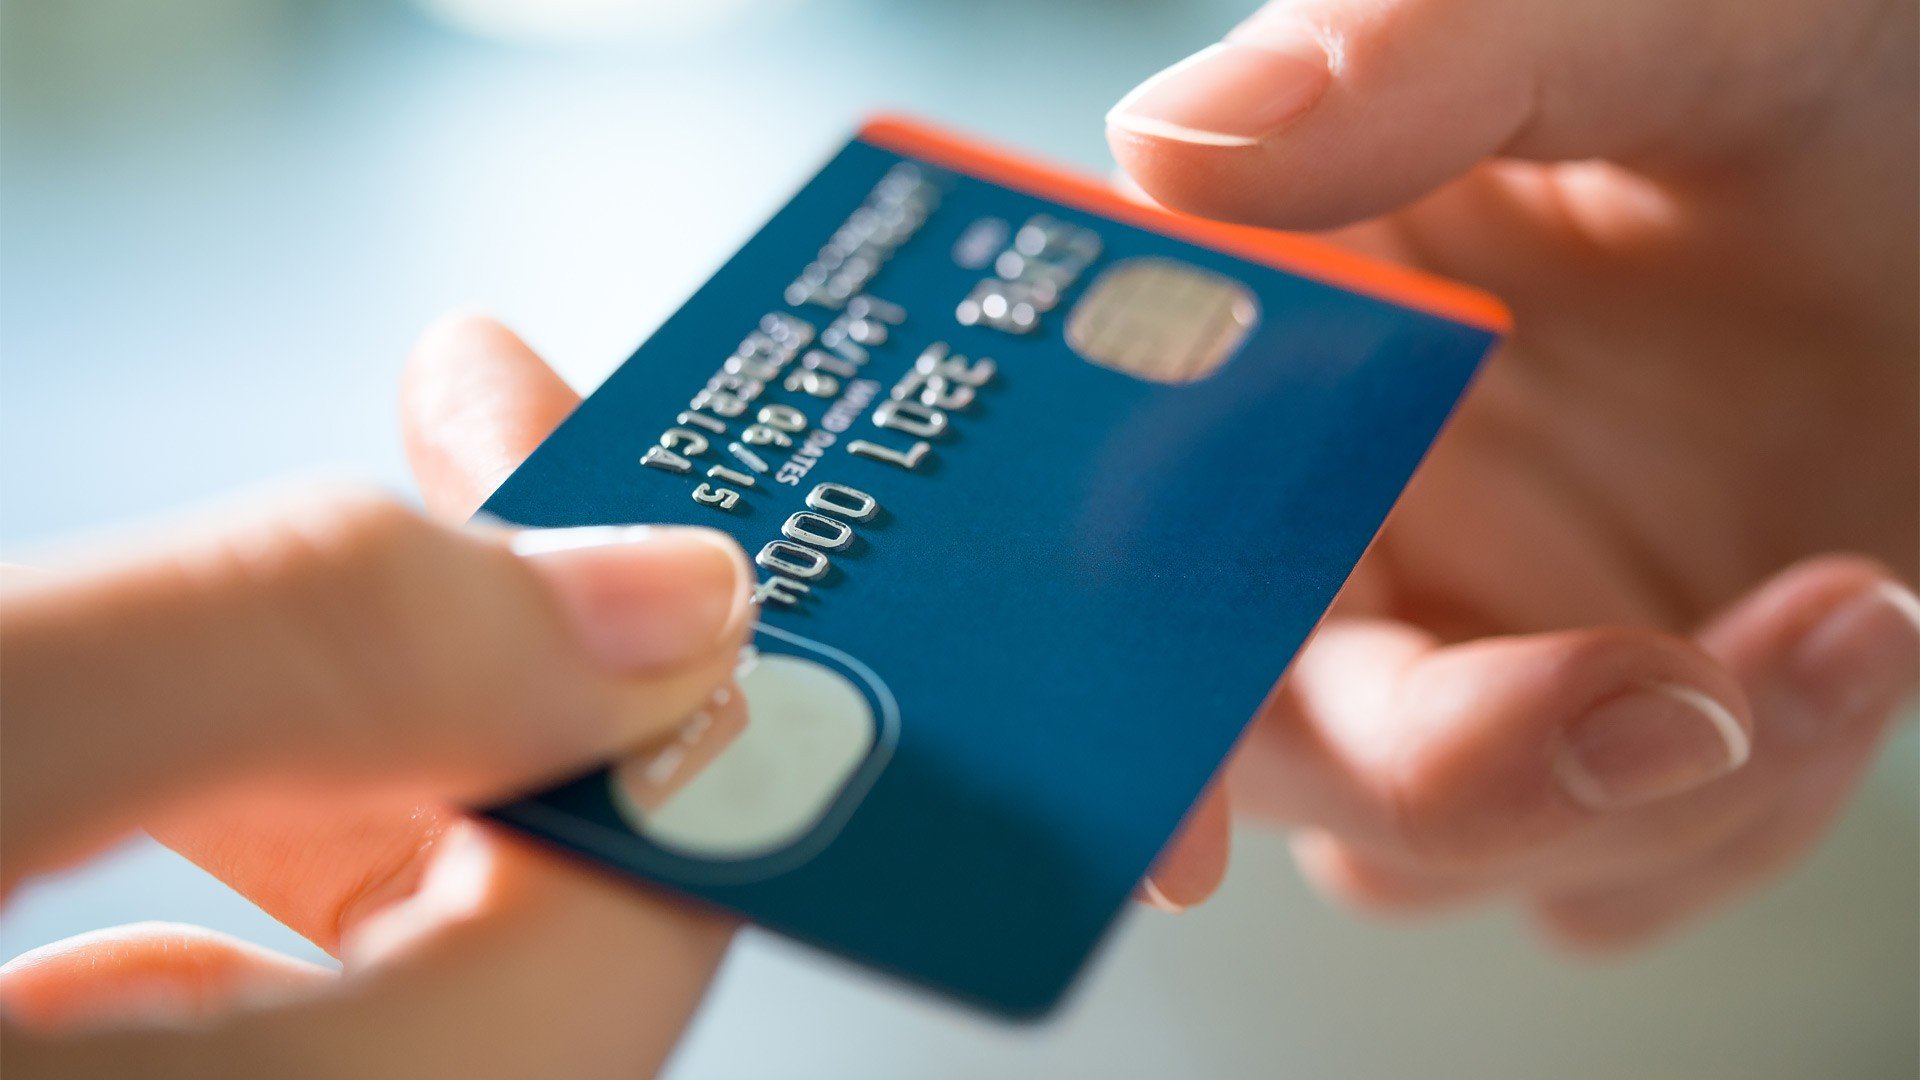 Presentan en el Senado una ley para prohibir el uso de tarjetas de crédito y débito en sitios de apuestas no autorizados por el Gobierno brasileño